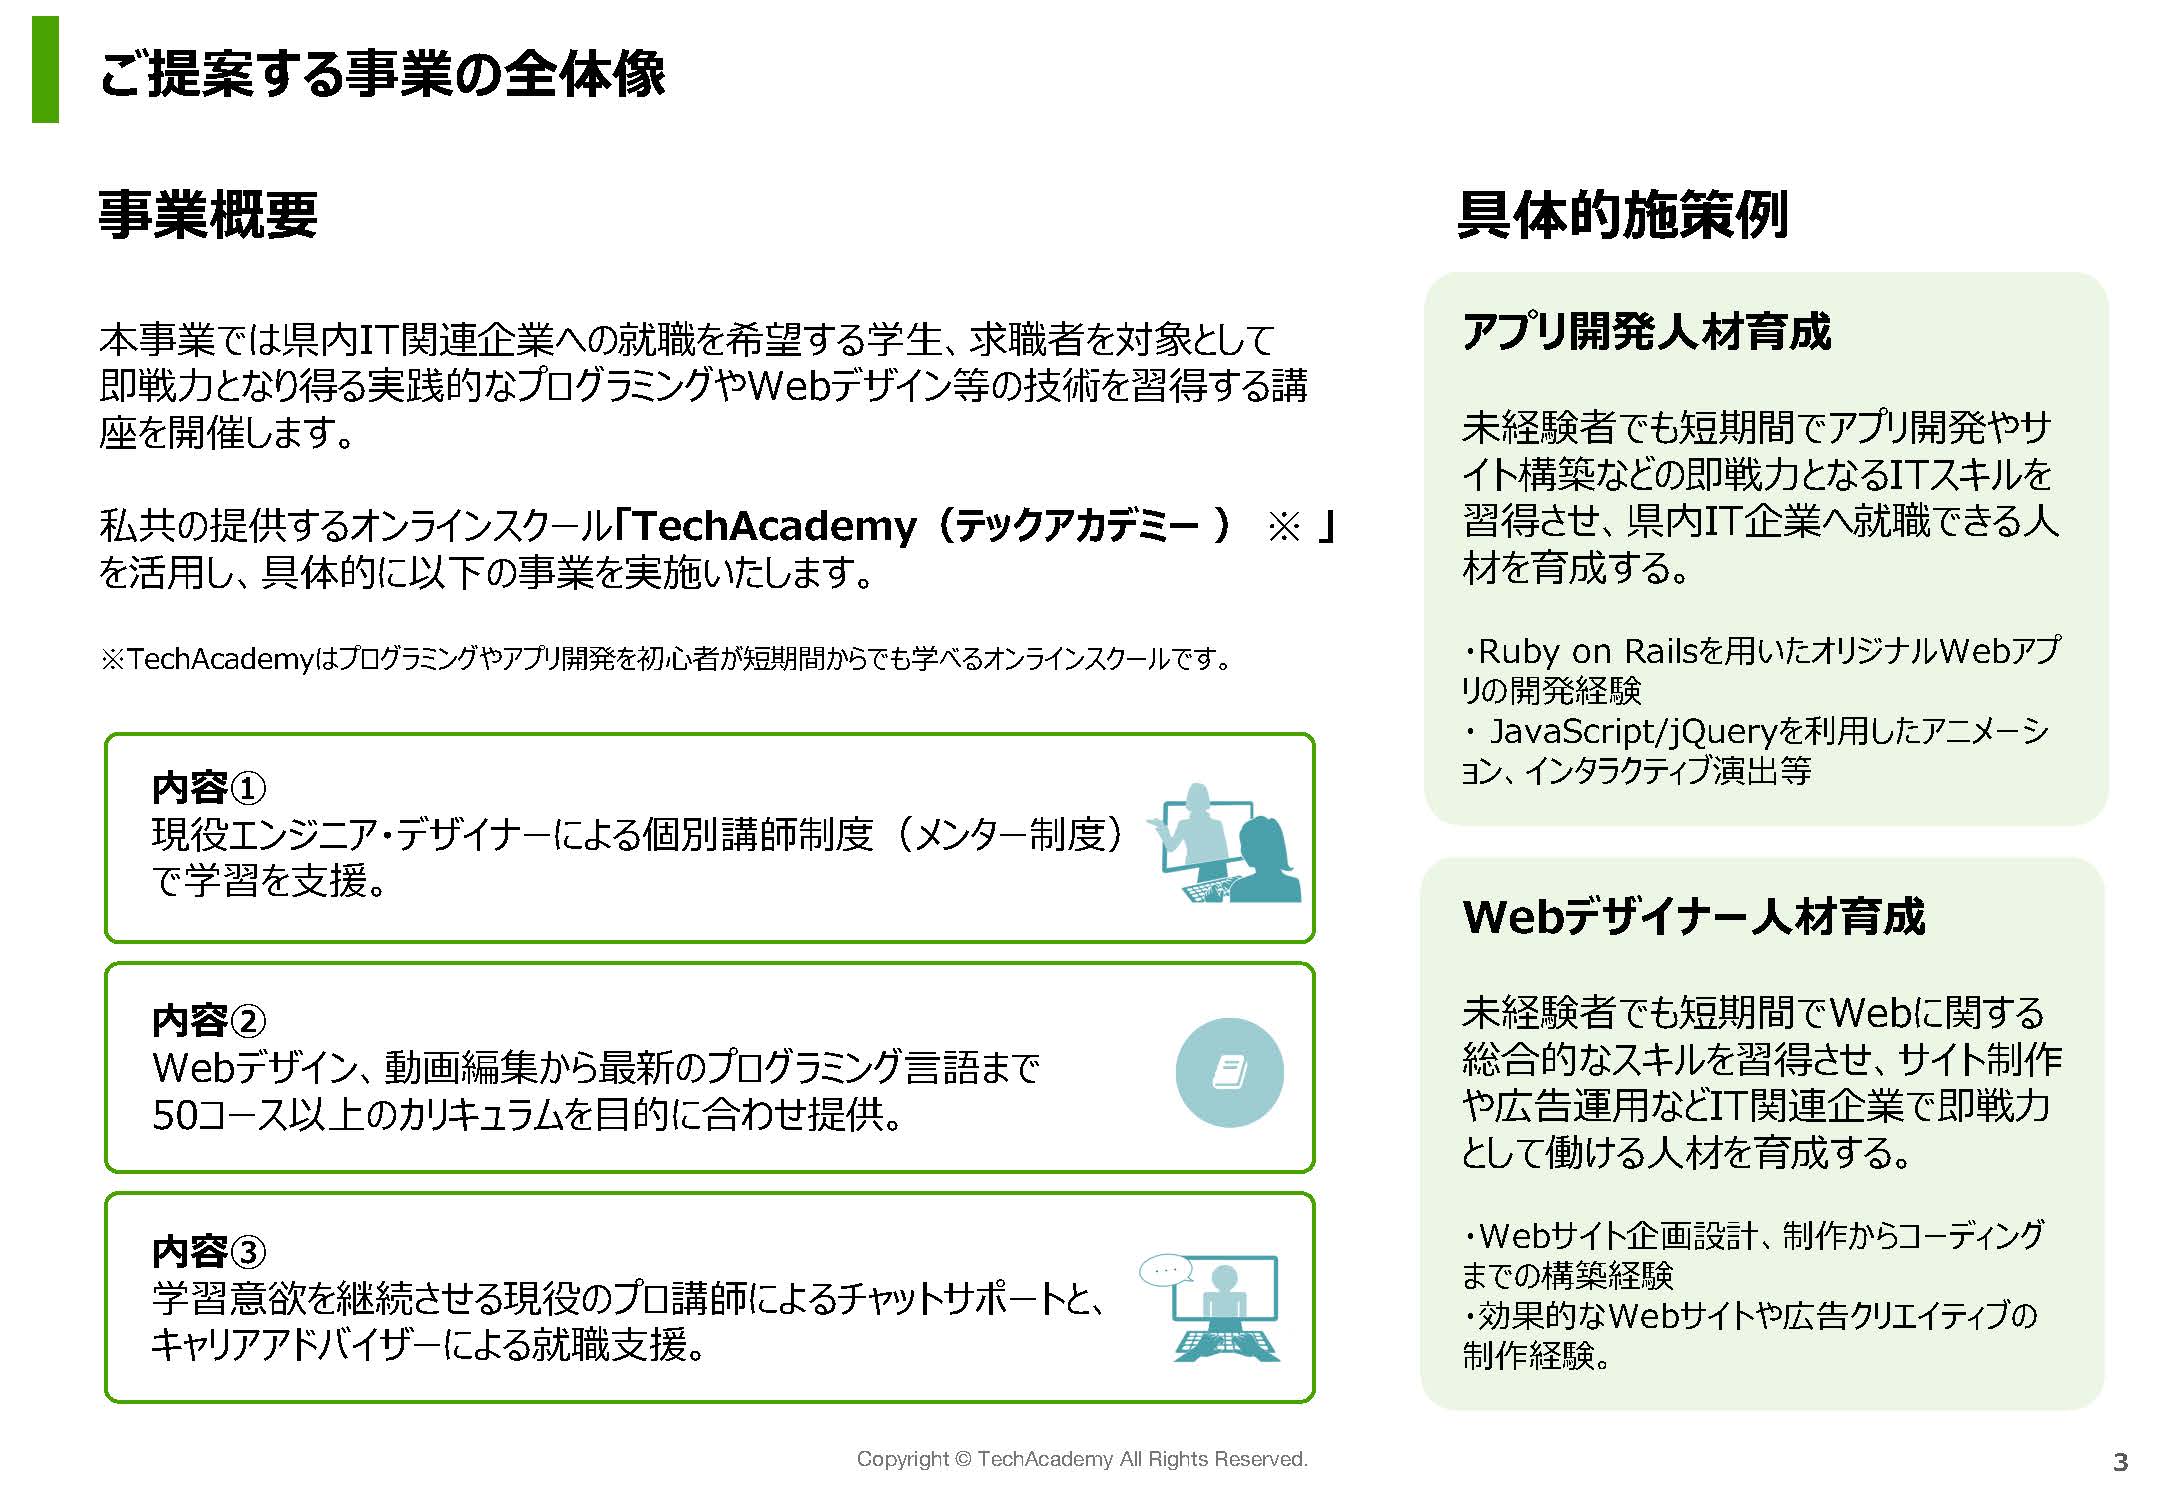 【自治体様向け】TechAcademy提案書.v1_ページ_03.jpg